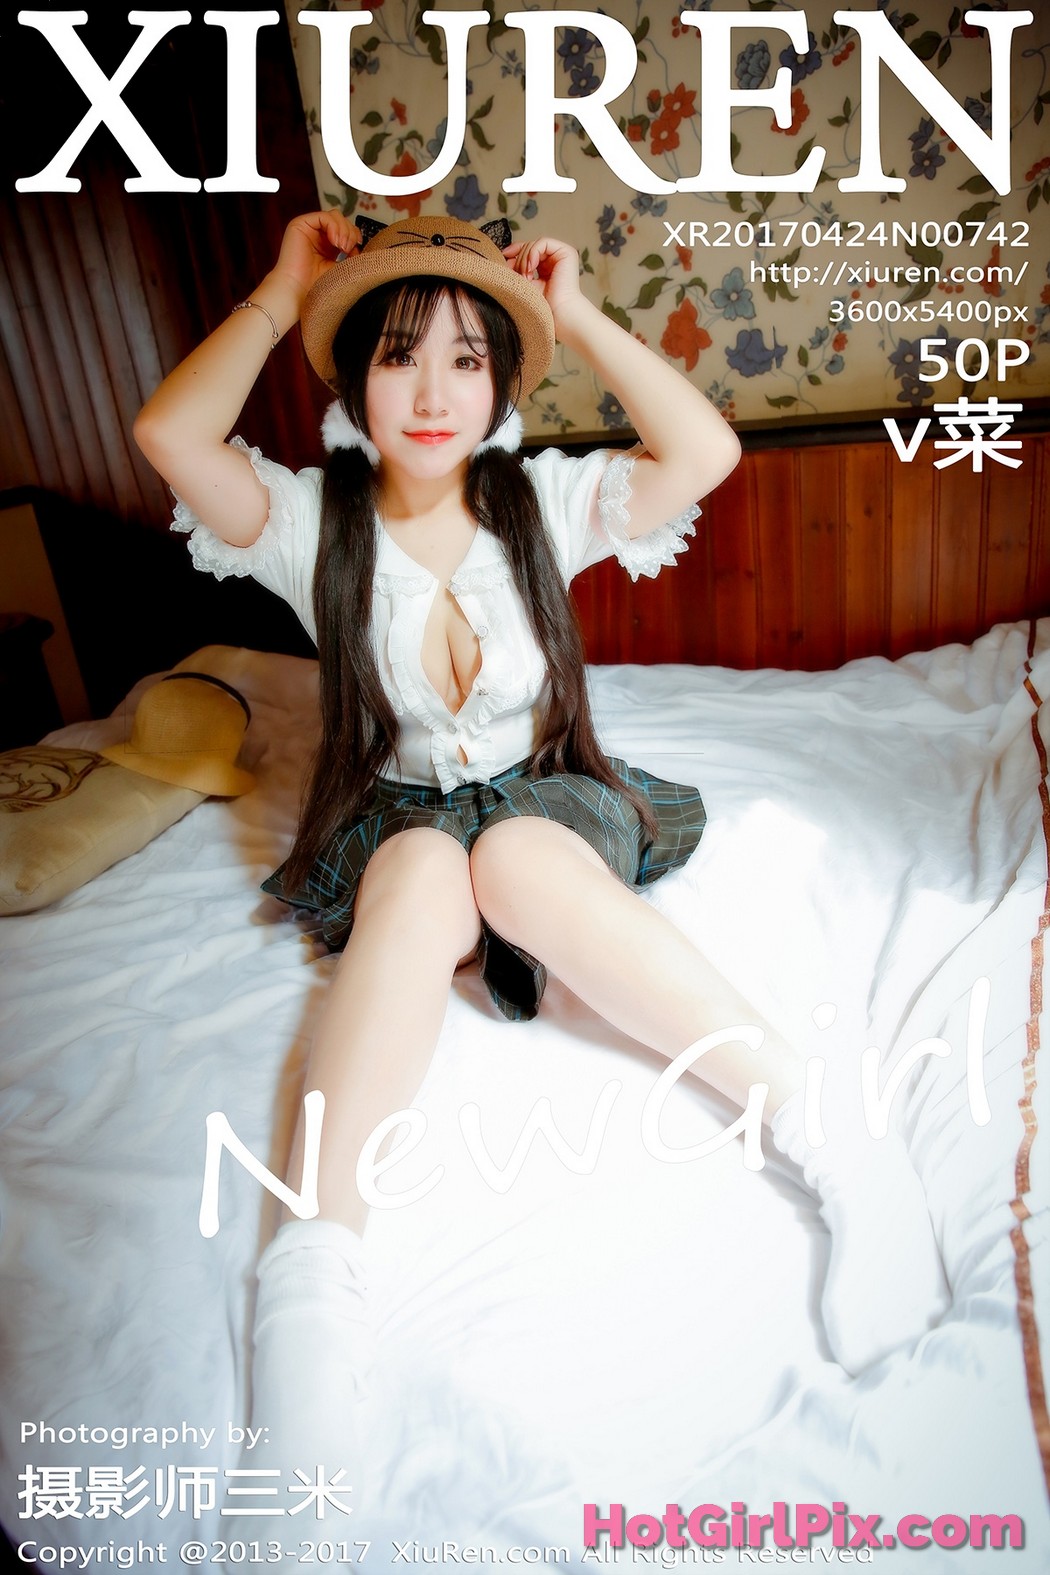 [XIUREN] No.742 v菜 Cai Cover Photo